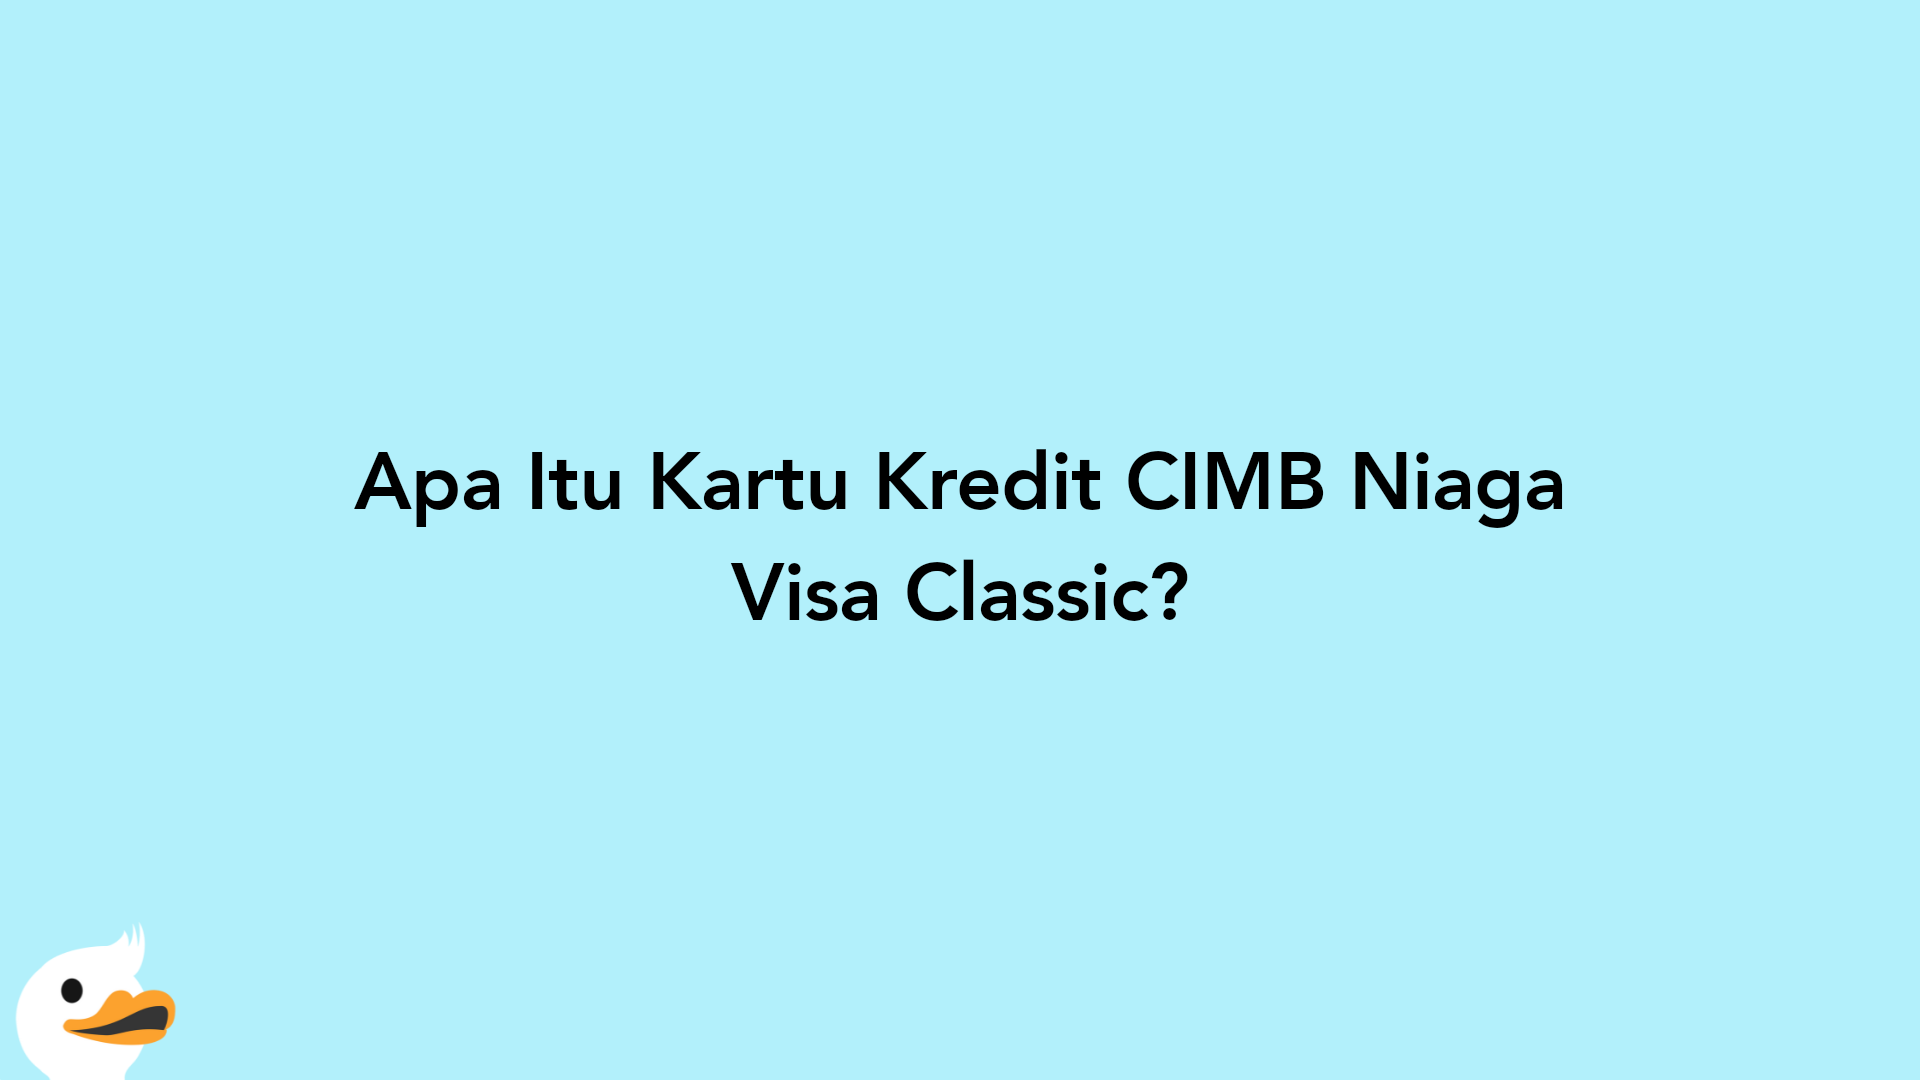 Apa Itu Kartu Kredit CIMB Niaga Visa Classic?